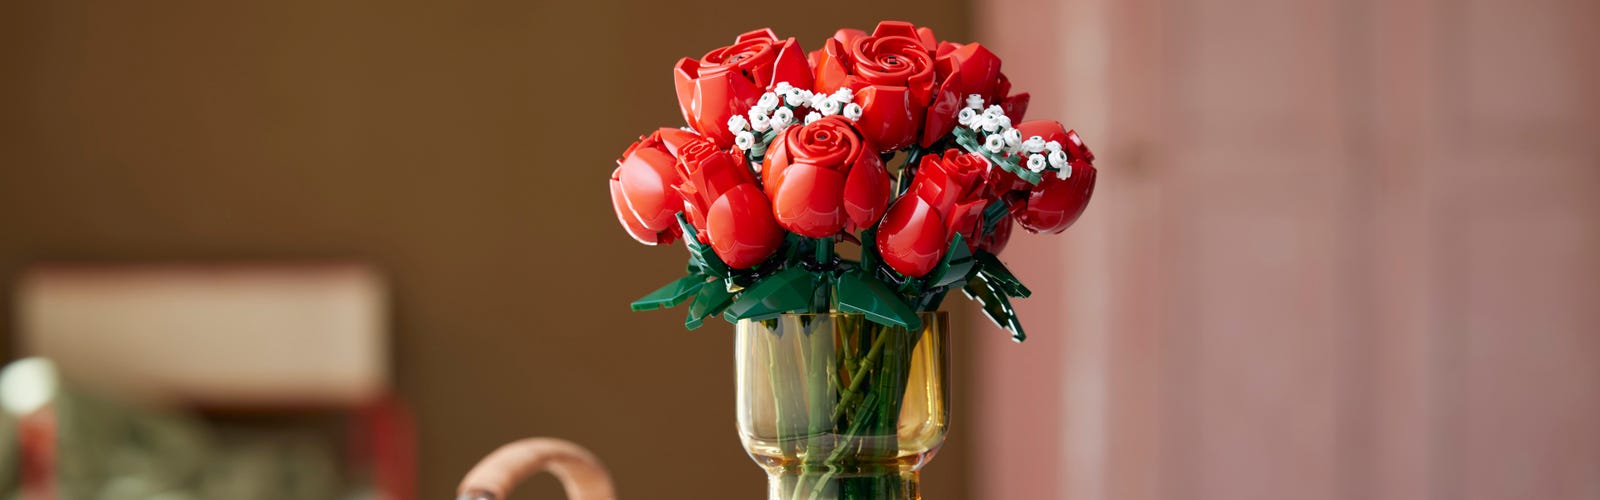 LEGO Iconos Ramo de rosas, decoración del hogar, flores artificiales,  regalo para ella o él para aniversario y día de San Valentín, colección